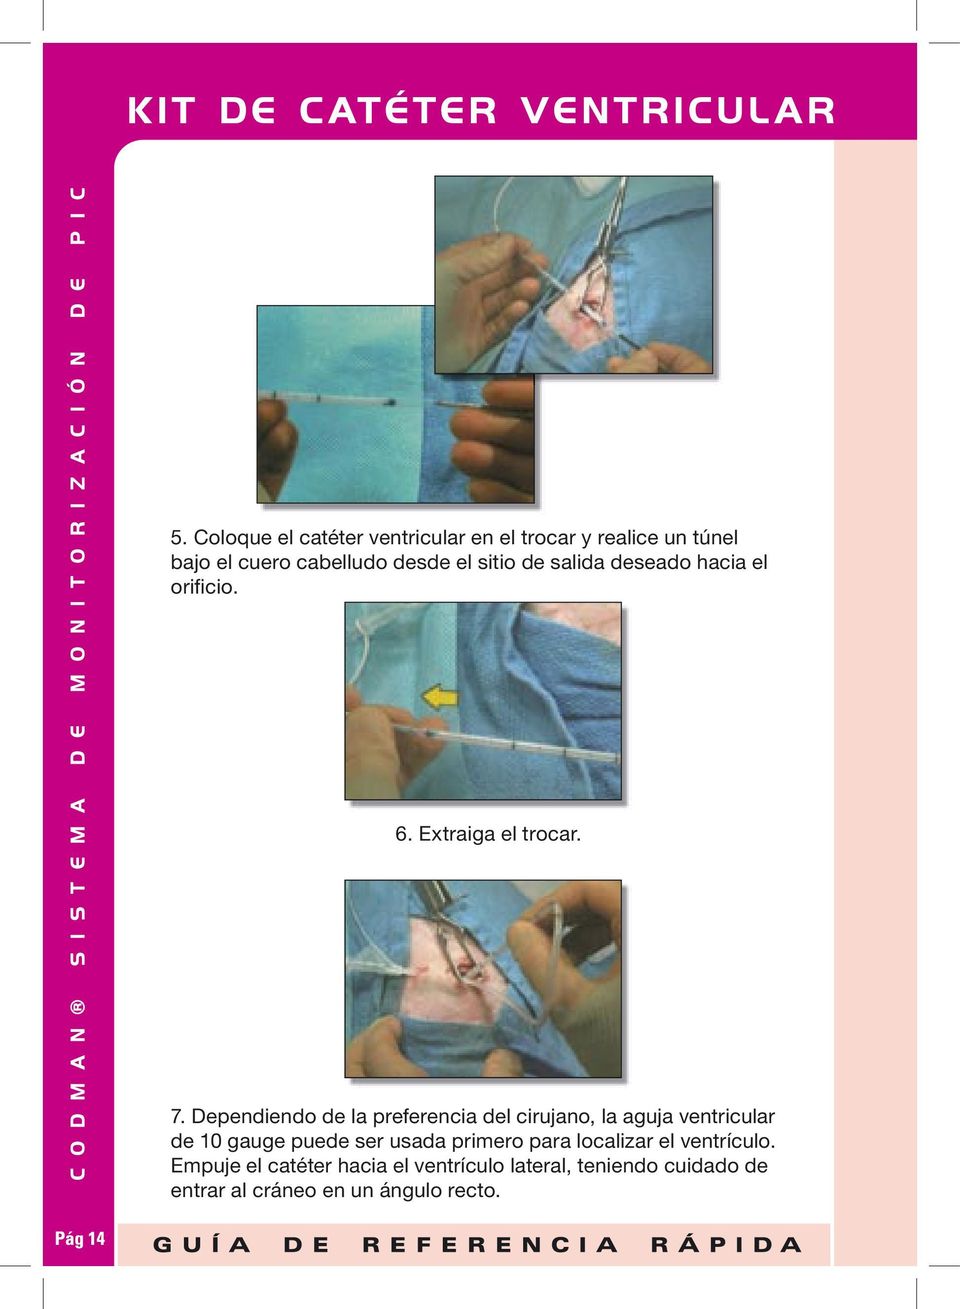 Dependiendo de la preferencia del cirujano, la aguja ventricular de 10 gauge puede ser usada primero